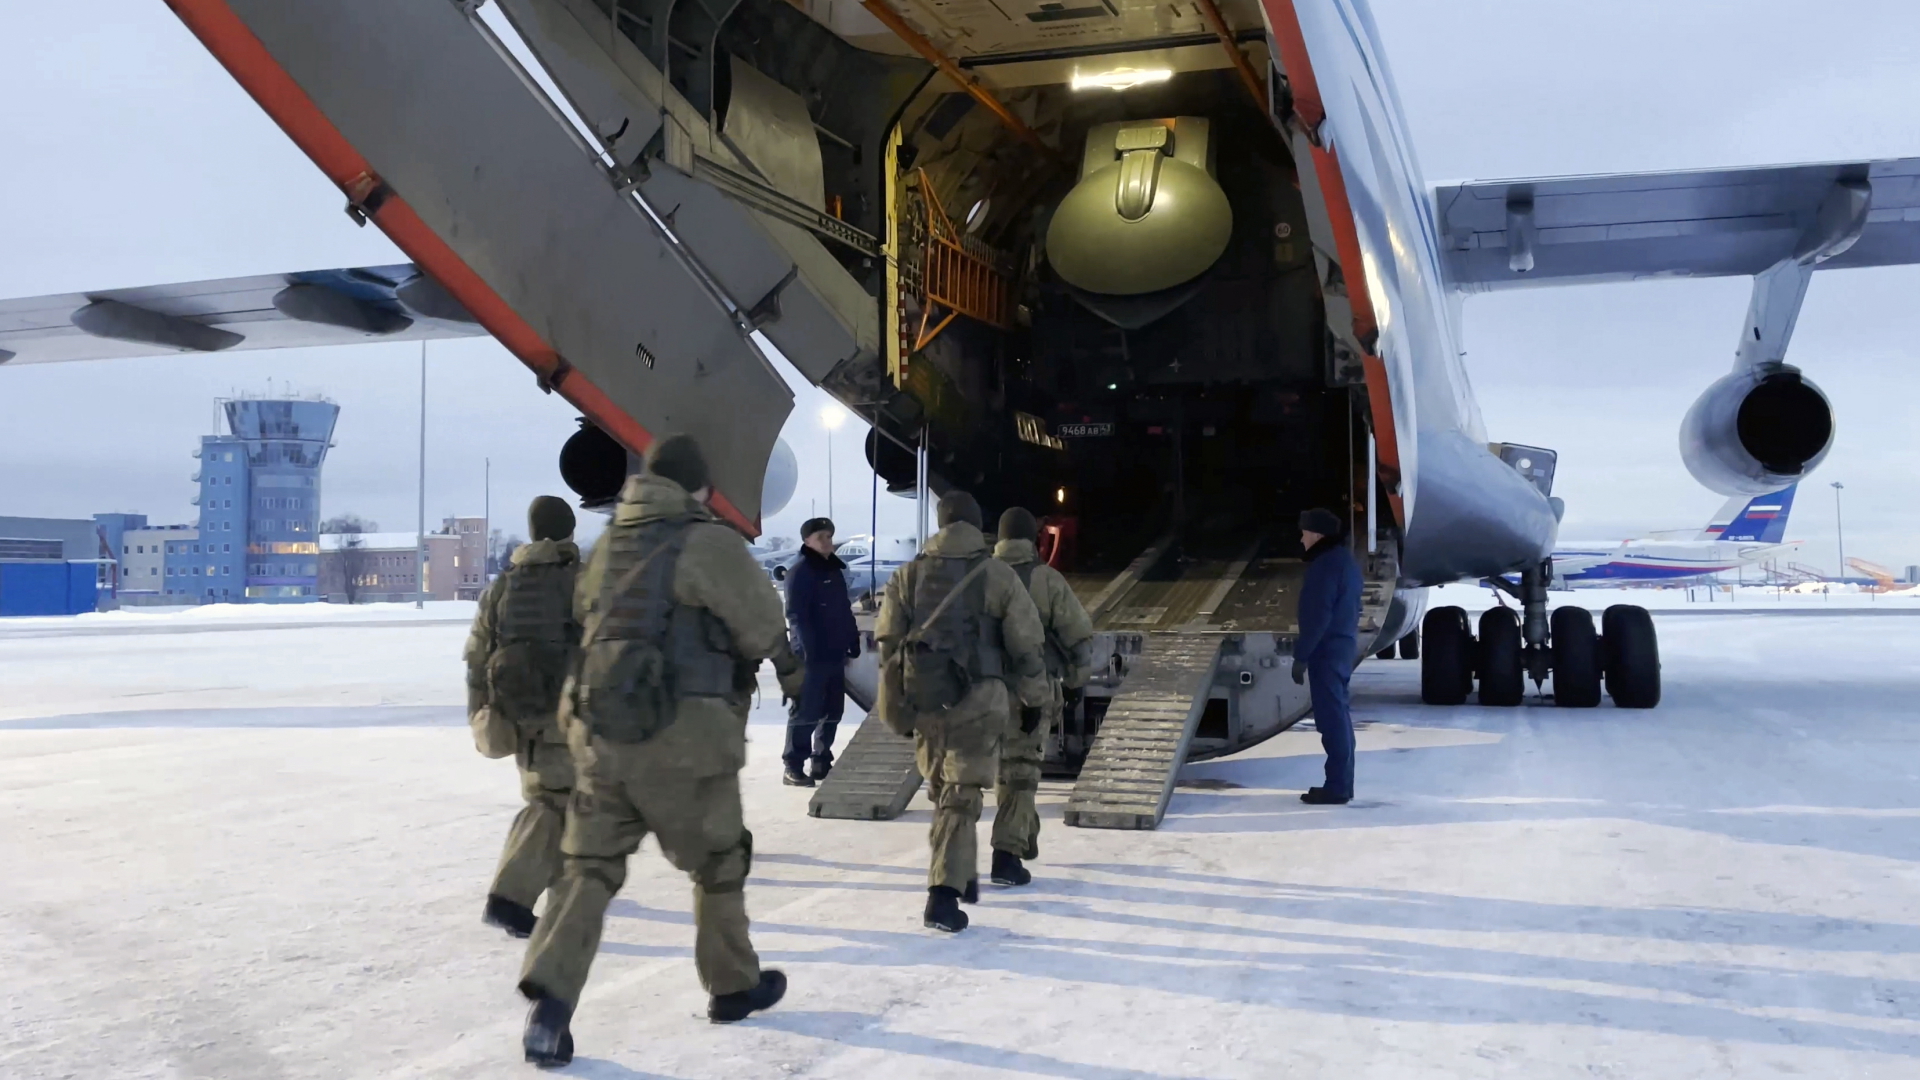 Russische Truppen besteigen ein Flugzeug, um im Rahmen der OVKS nach Kasachstan entsandt zu werden. | dpa